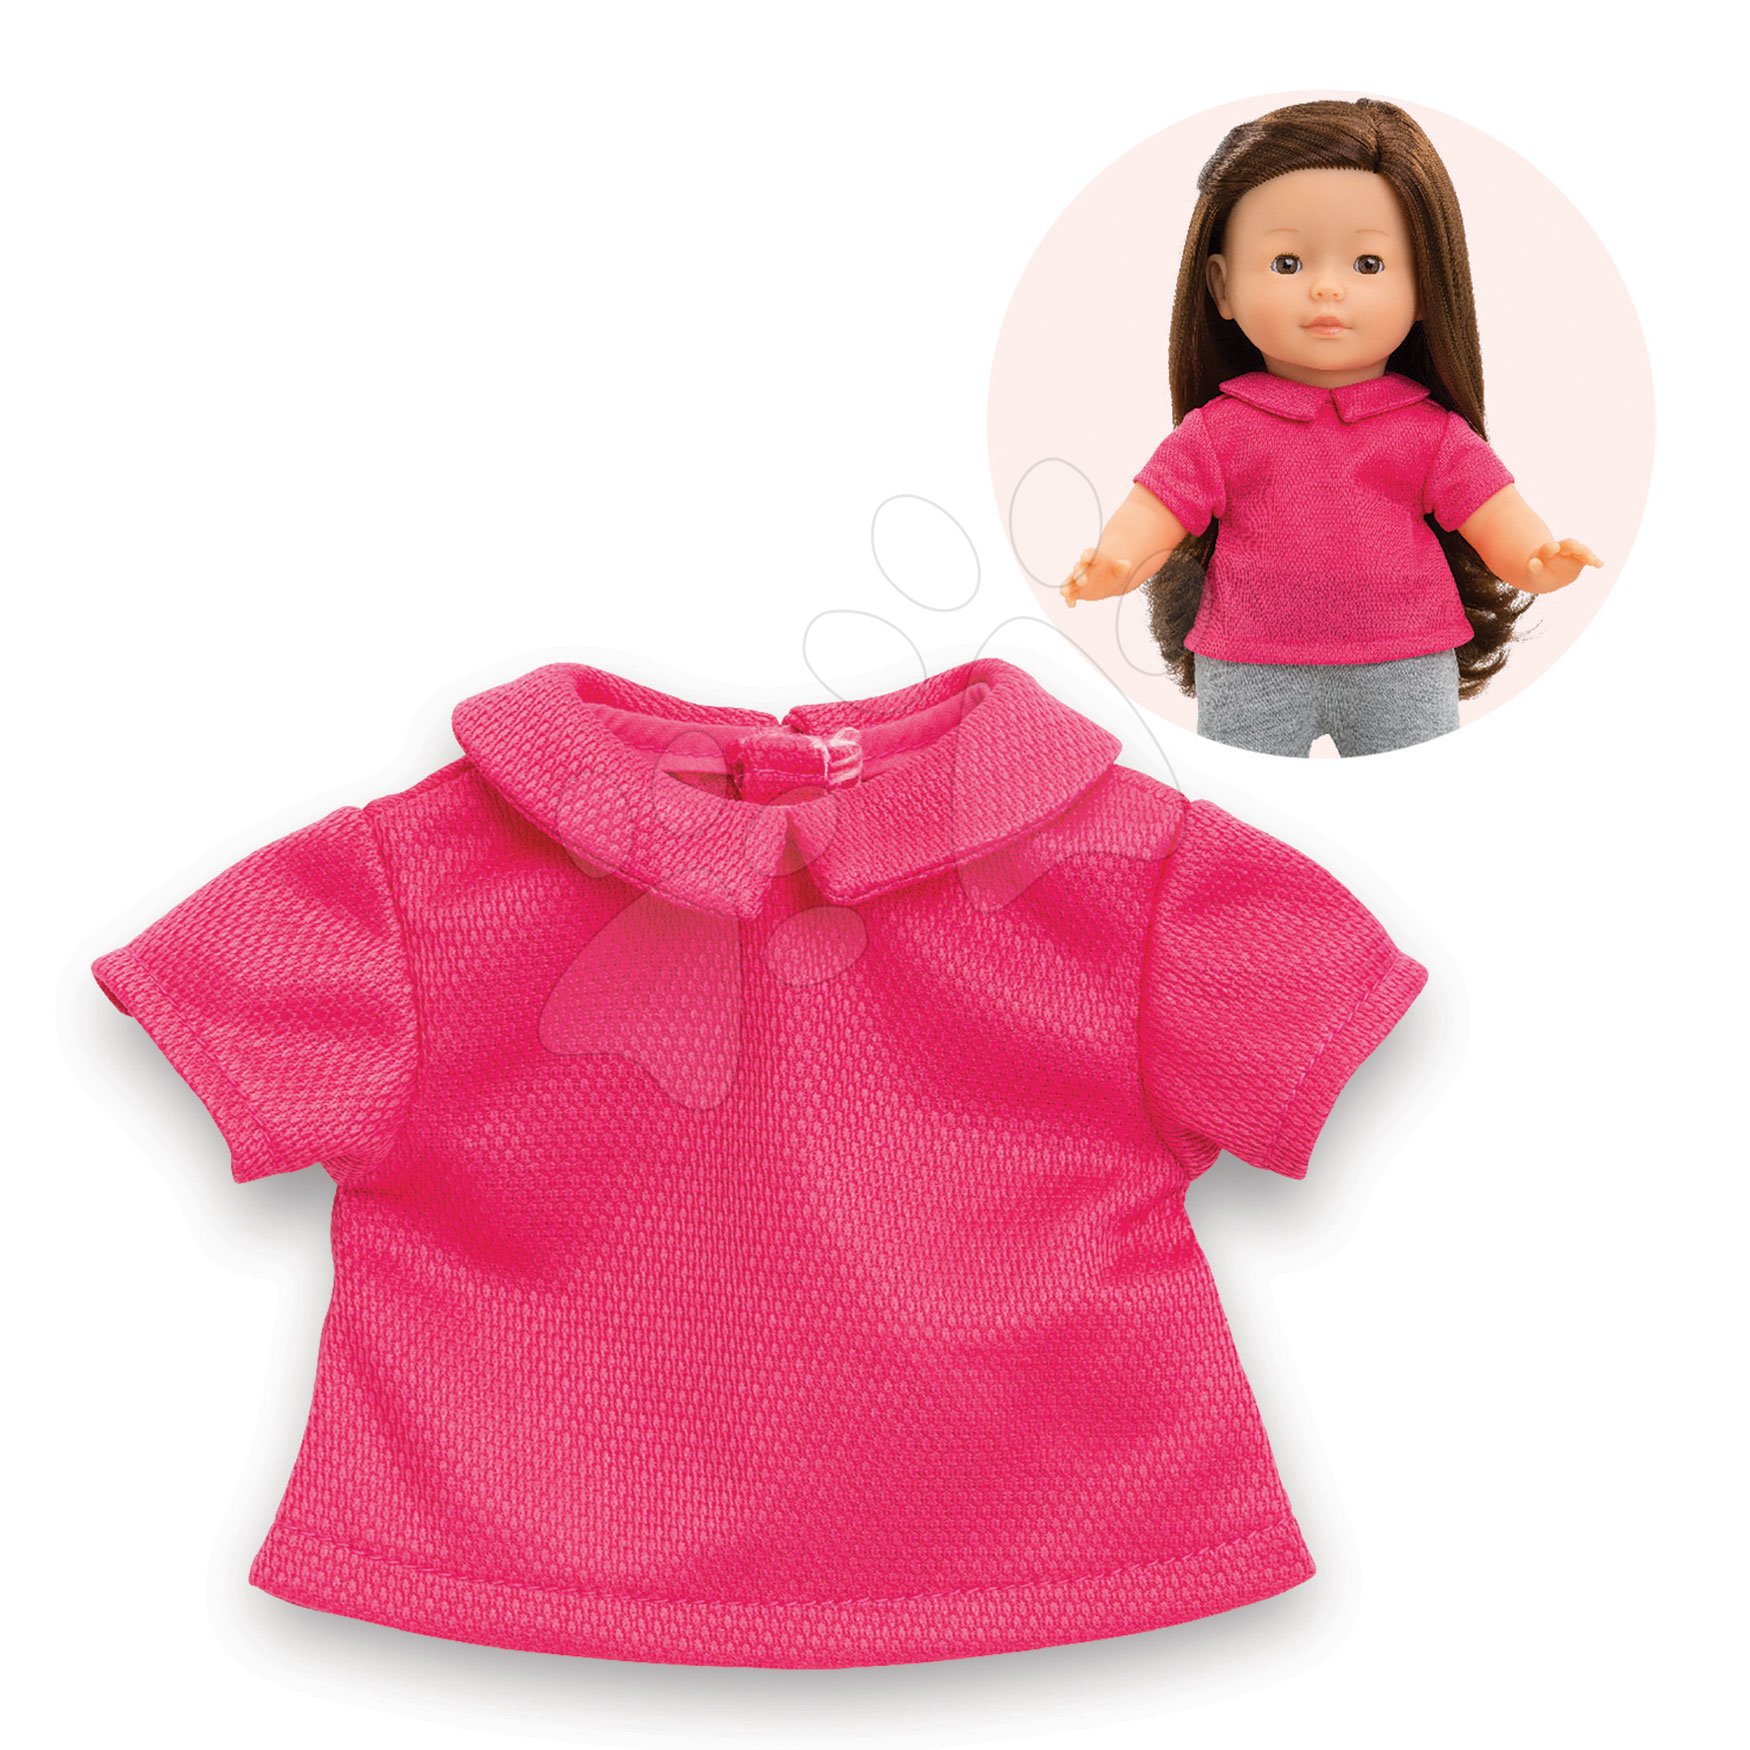 Trikó Polo Shirt Pink Ma Corolle 36 cm játékbabának 4 évtől